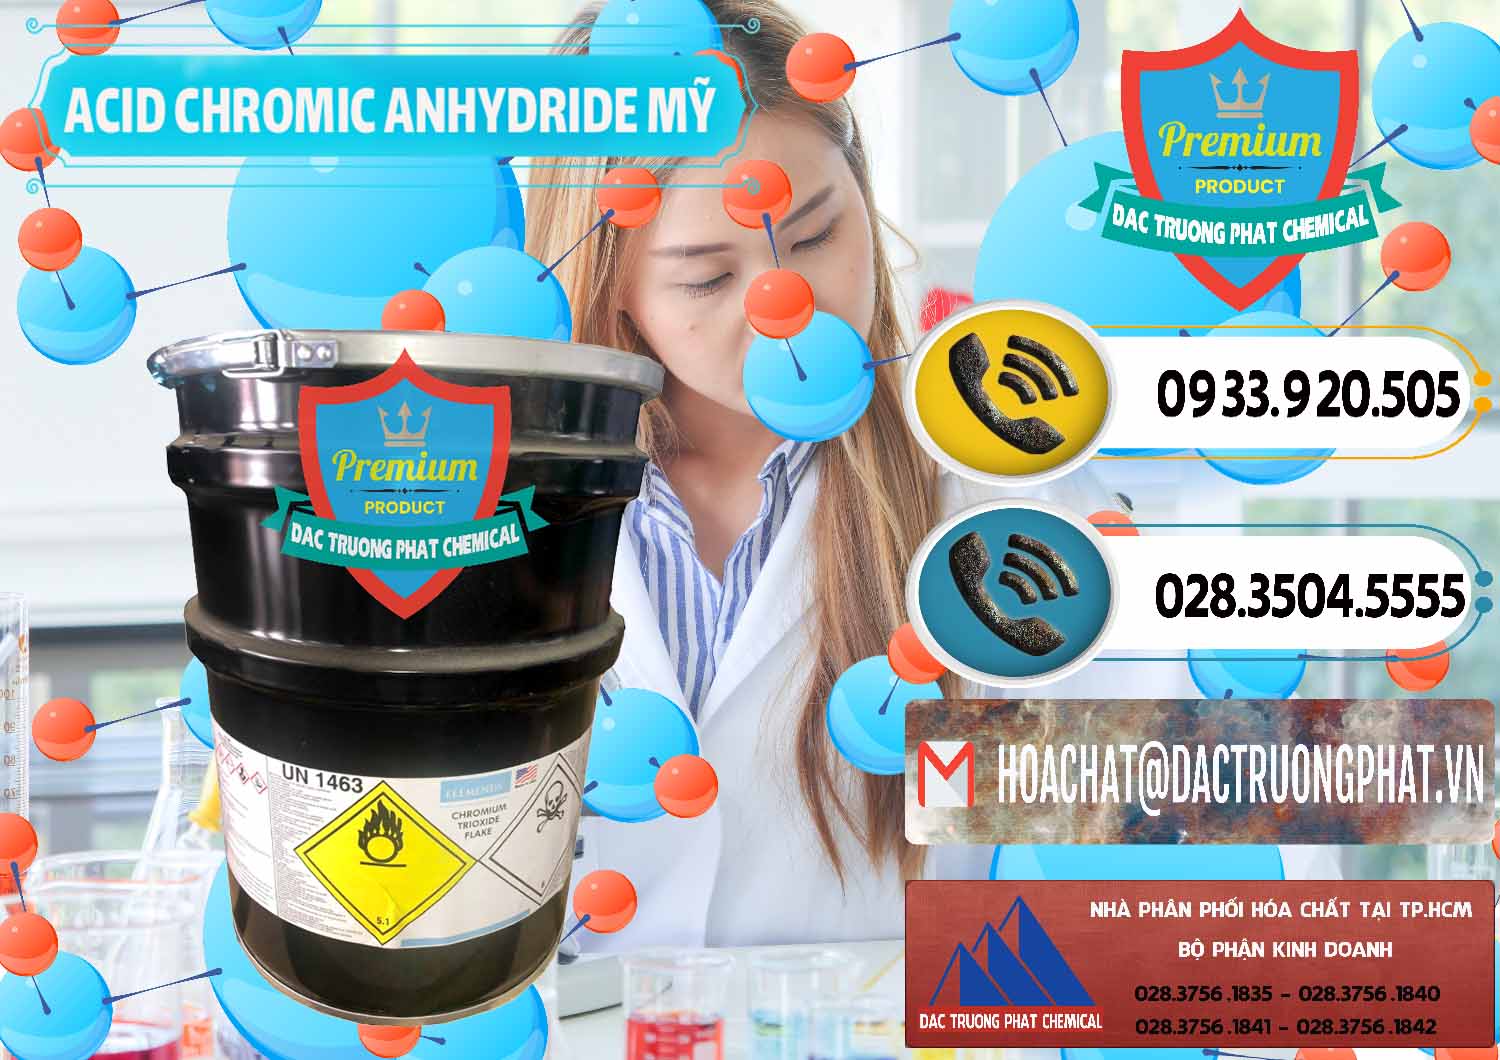 Đơn vị nhập khẩu và bán Acid Chromic Anhydride - Cromic CRO3 USA Mỹ - 0364 - Đơn vị kinh doanh ( phân phối ) hóa chất tại TP.HCM - hoachatdetnhuom.vn